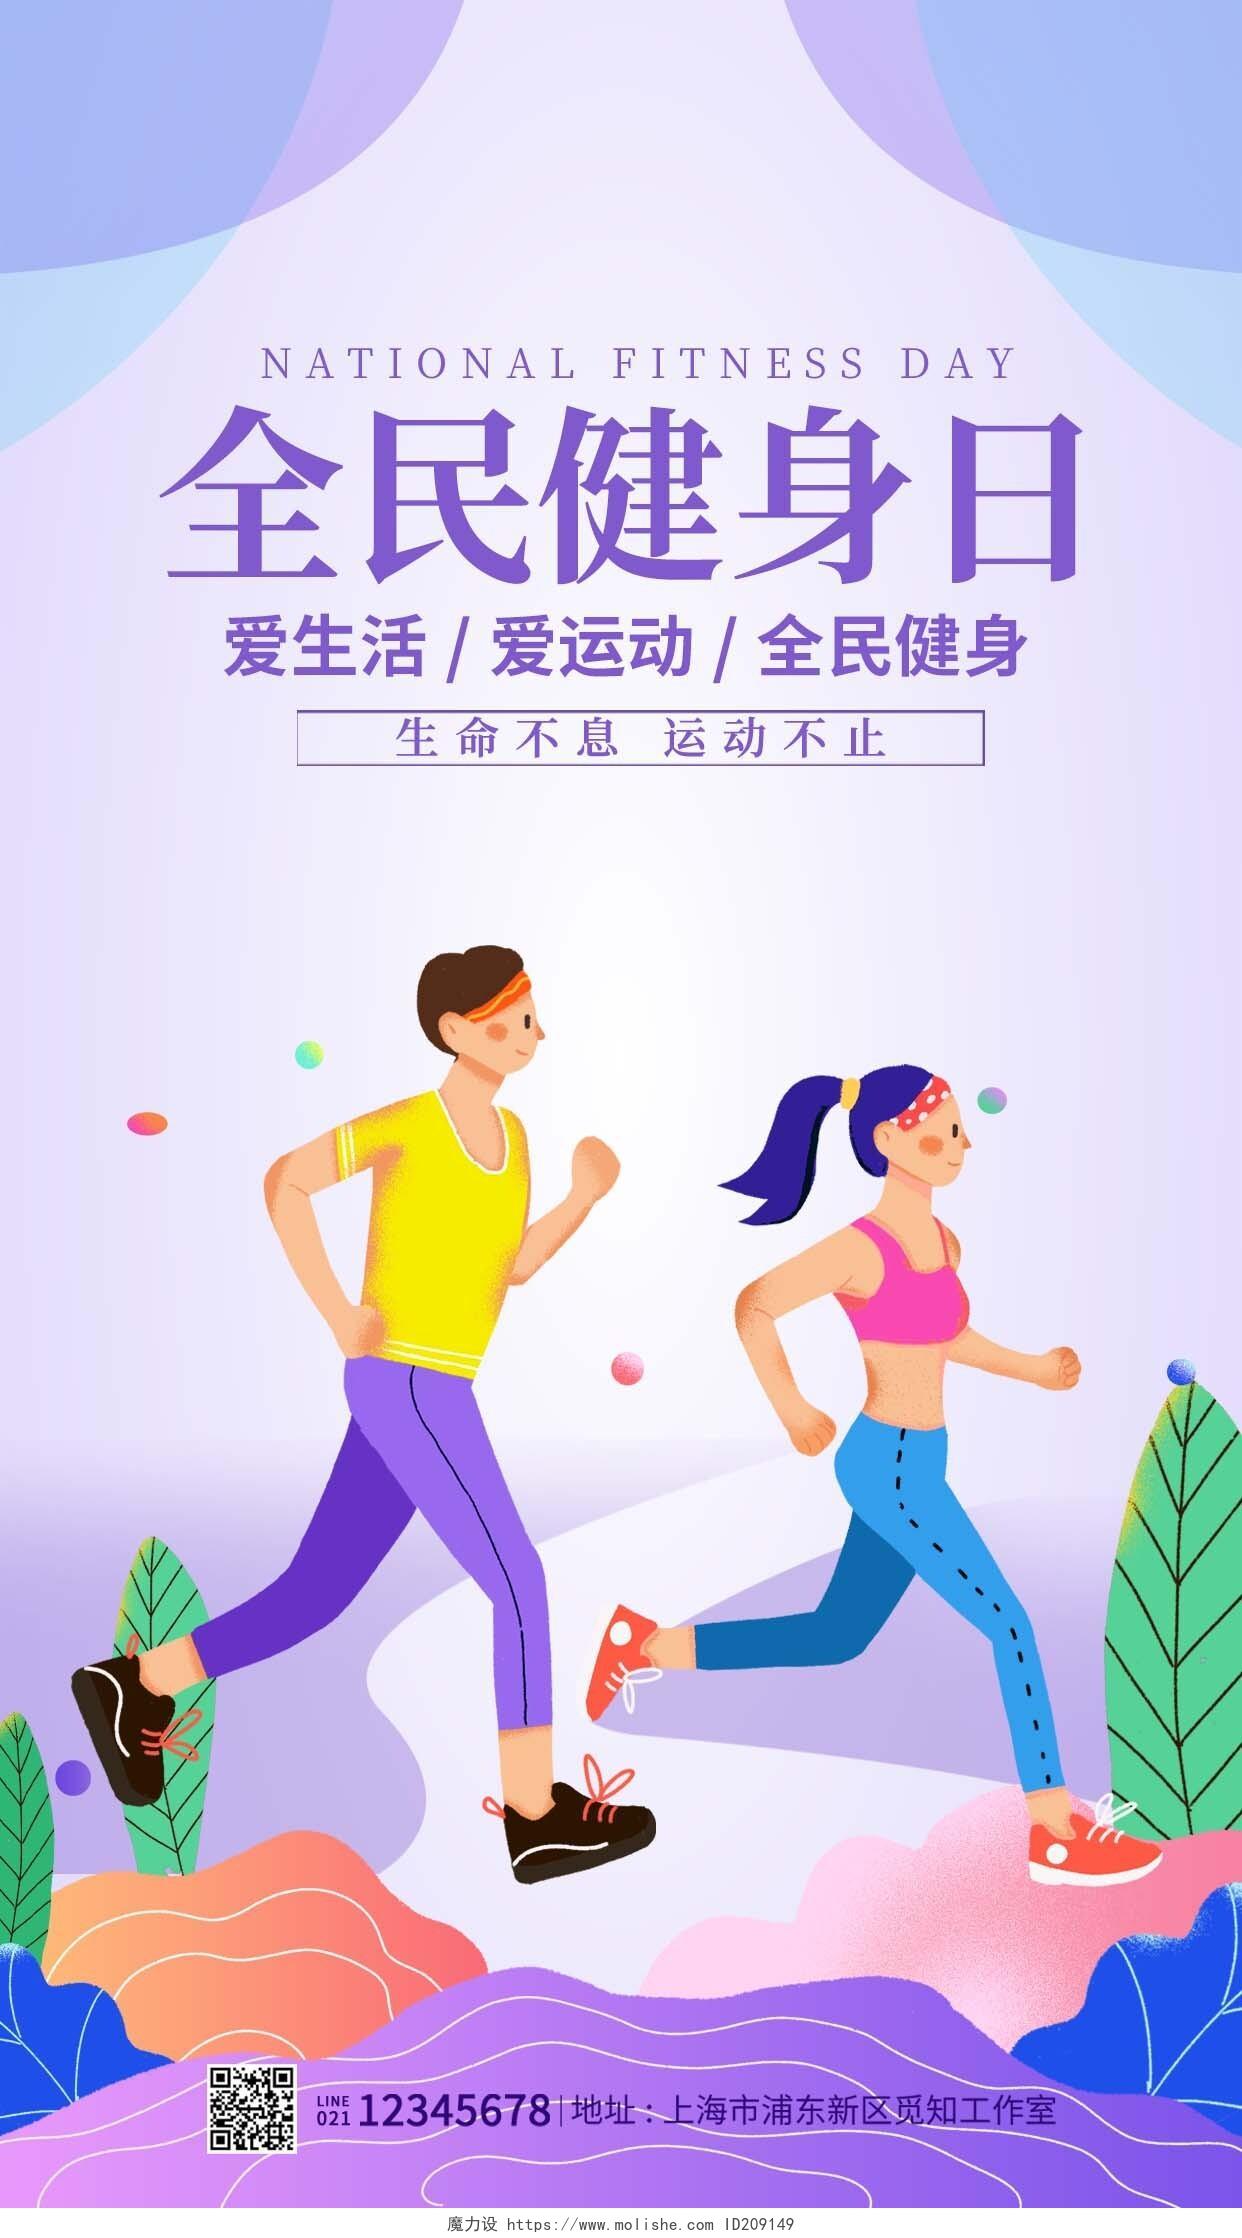 紫色卡通风格全民健身日健身海报健身房手机宣传海报